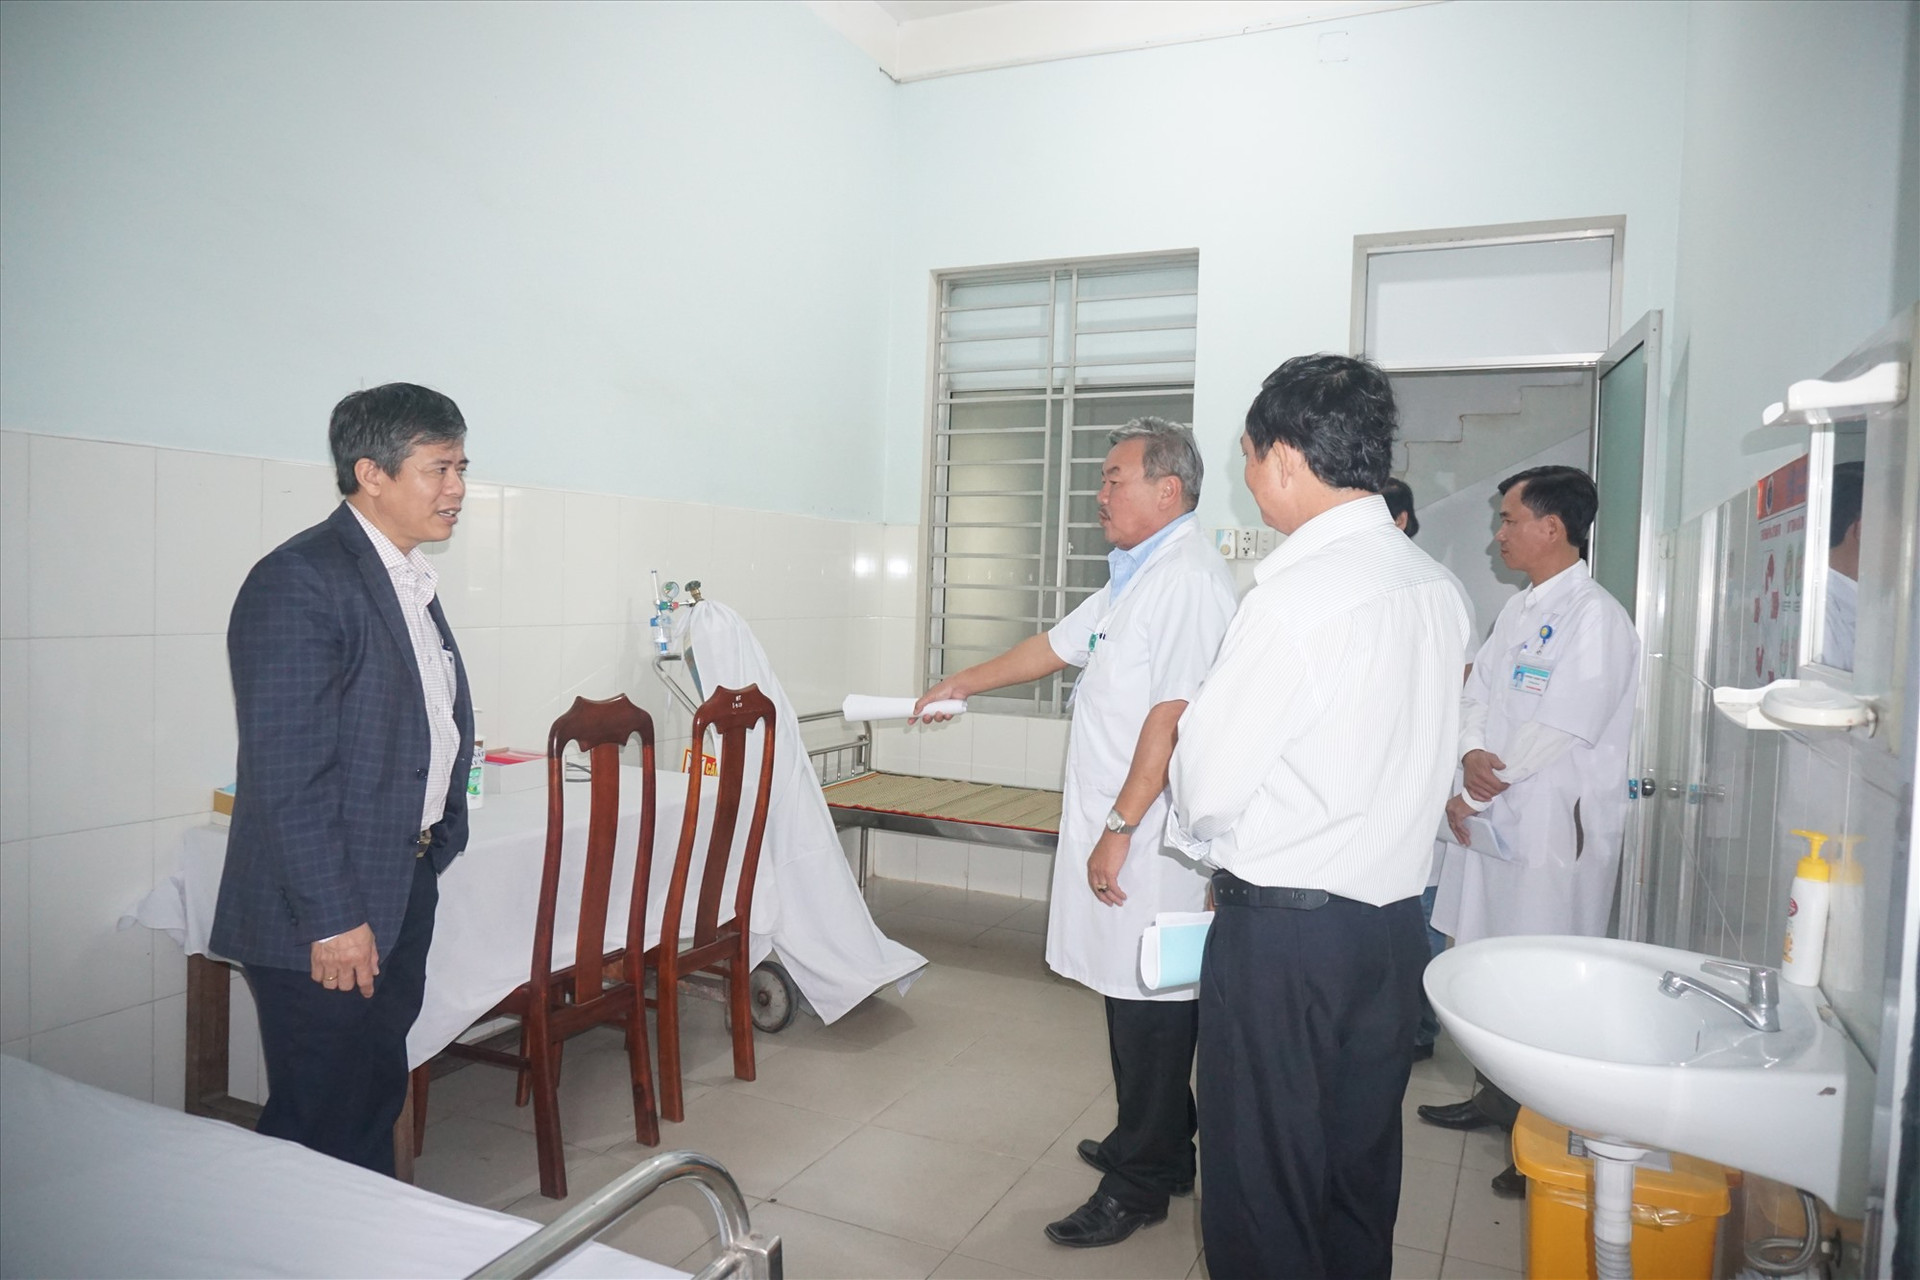 UBND huyện Thăng Bình kiểm tra công tác phòng chống dịch Covid-19 tại Trung tâm y tế huyện.